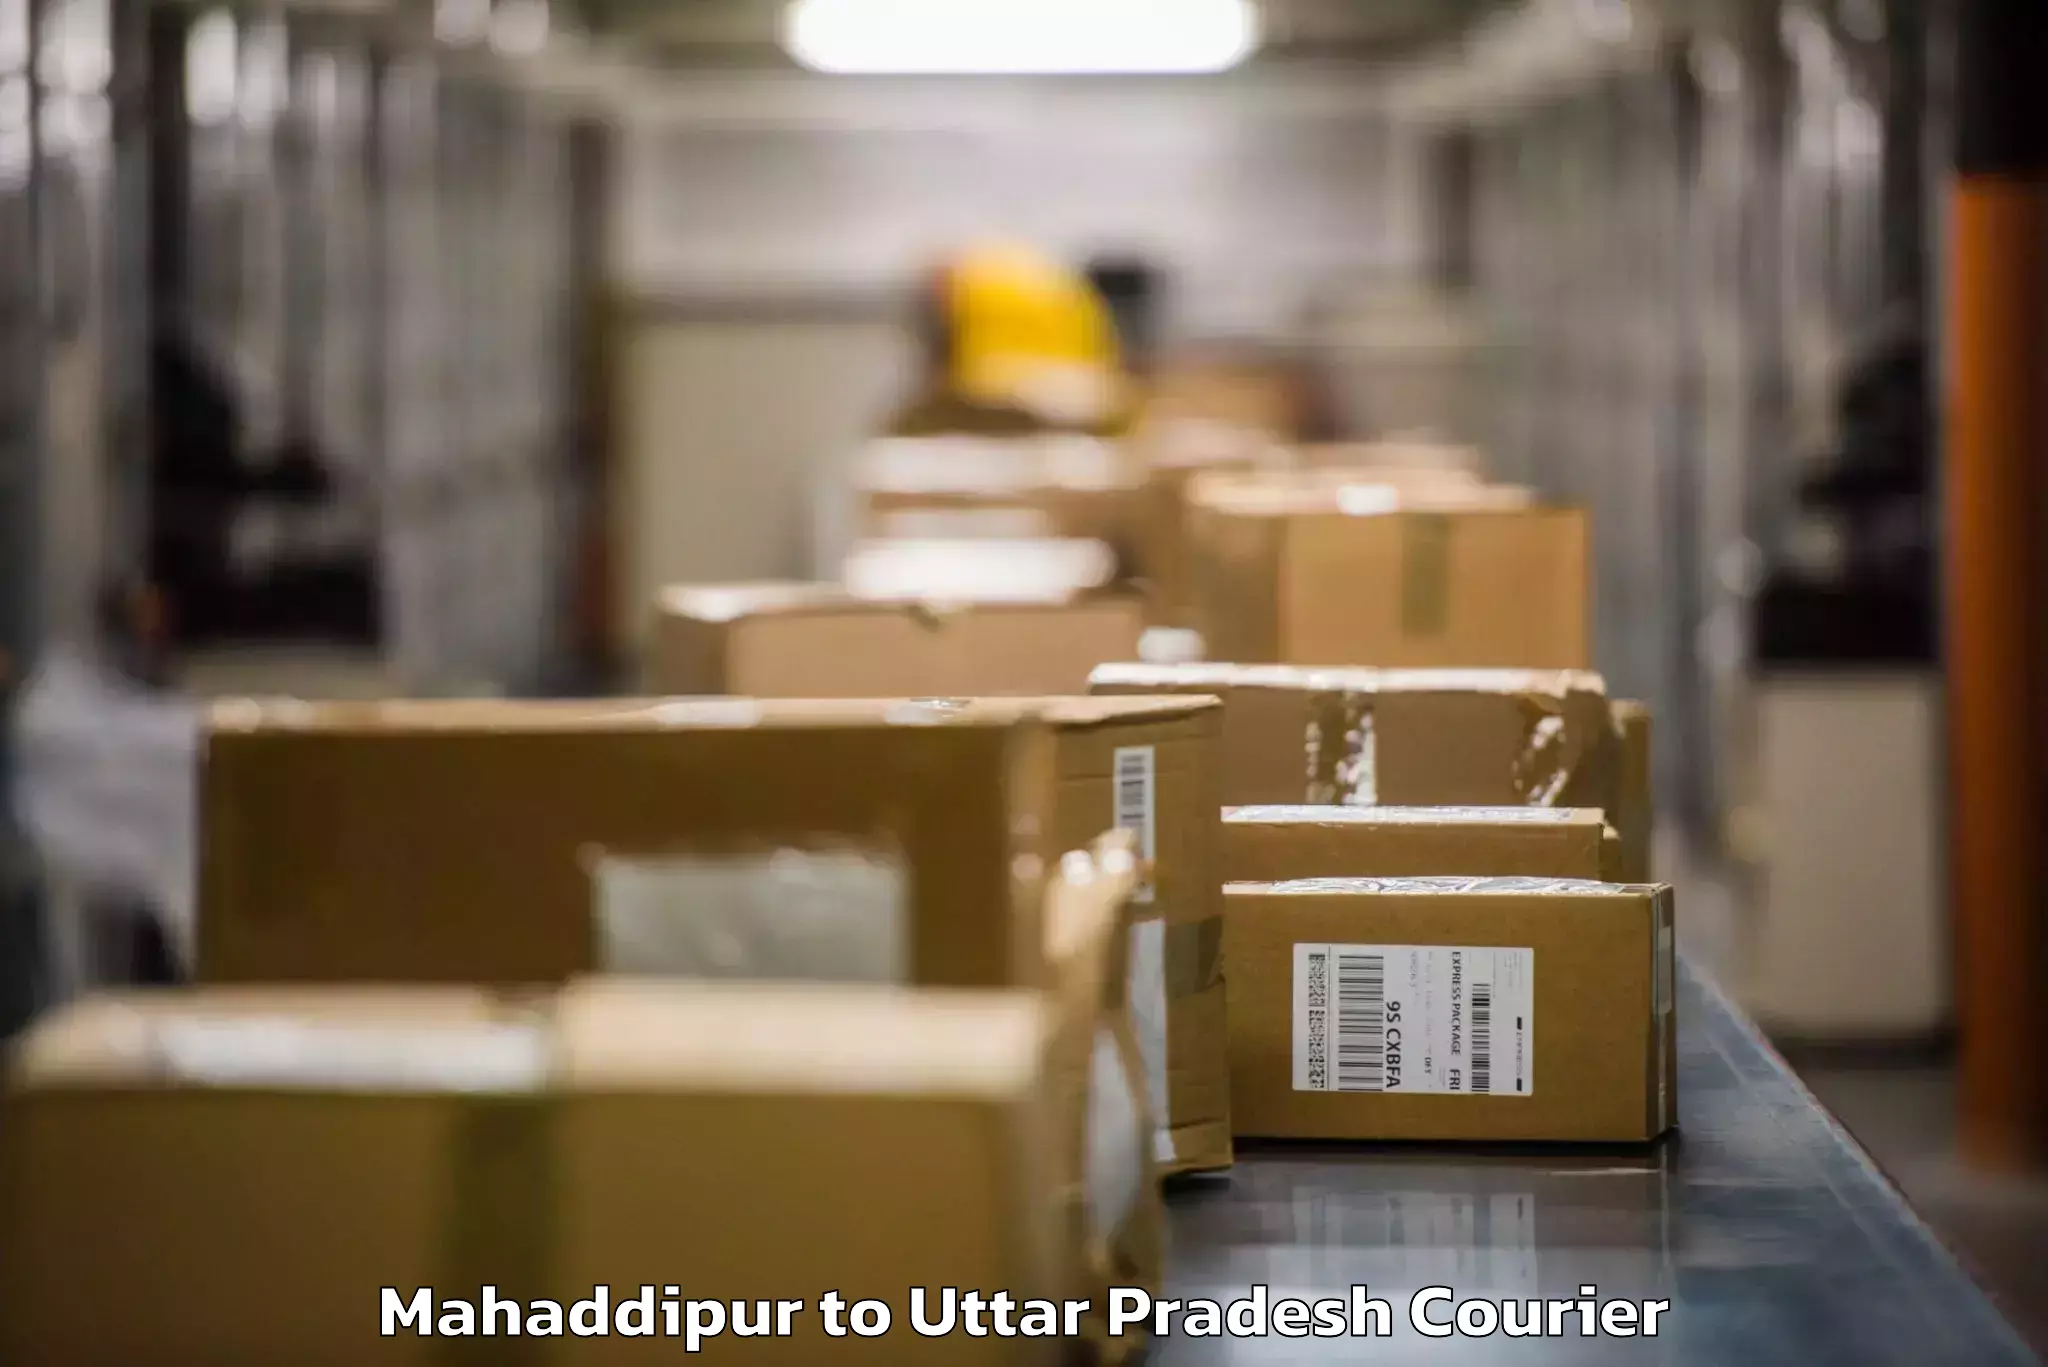 Baggage shipping optimization in Mahaddipur to Barhalganj